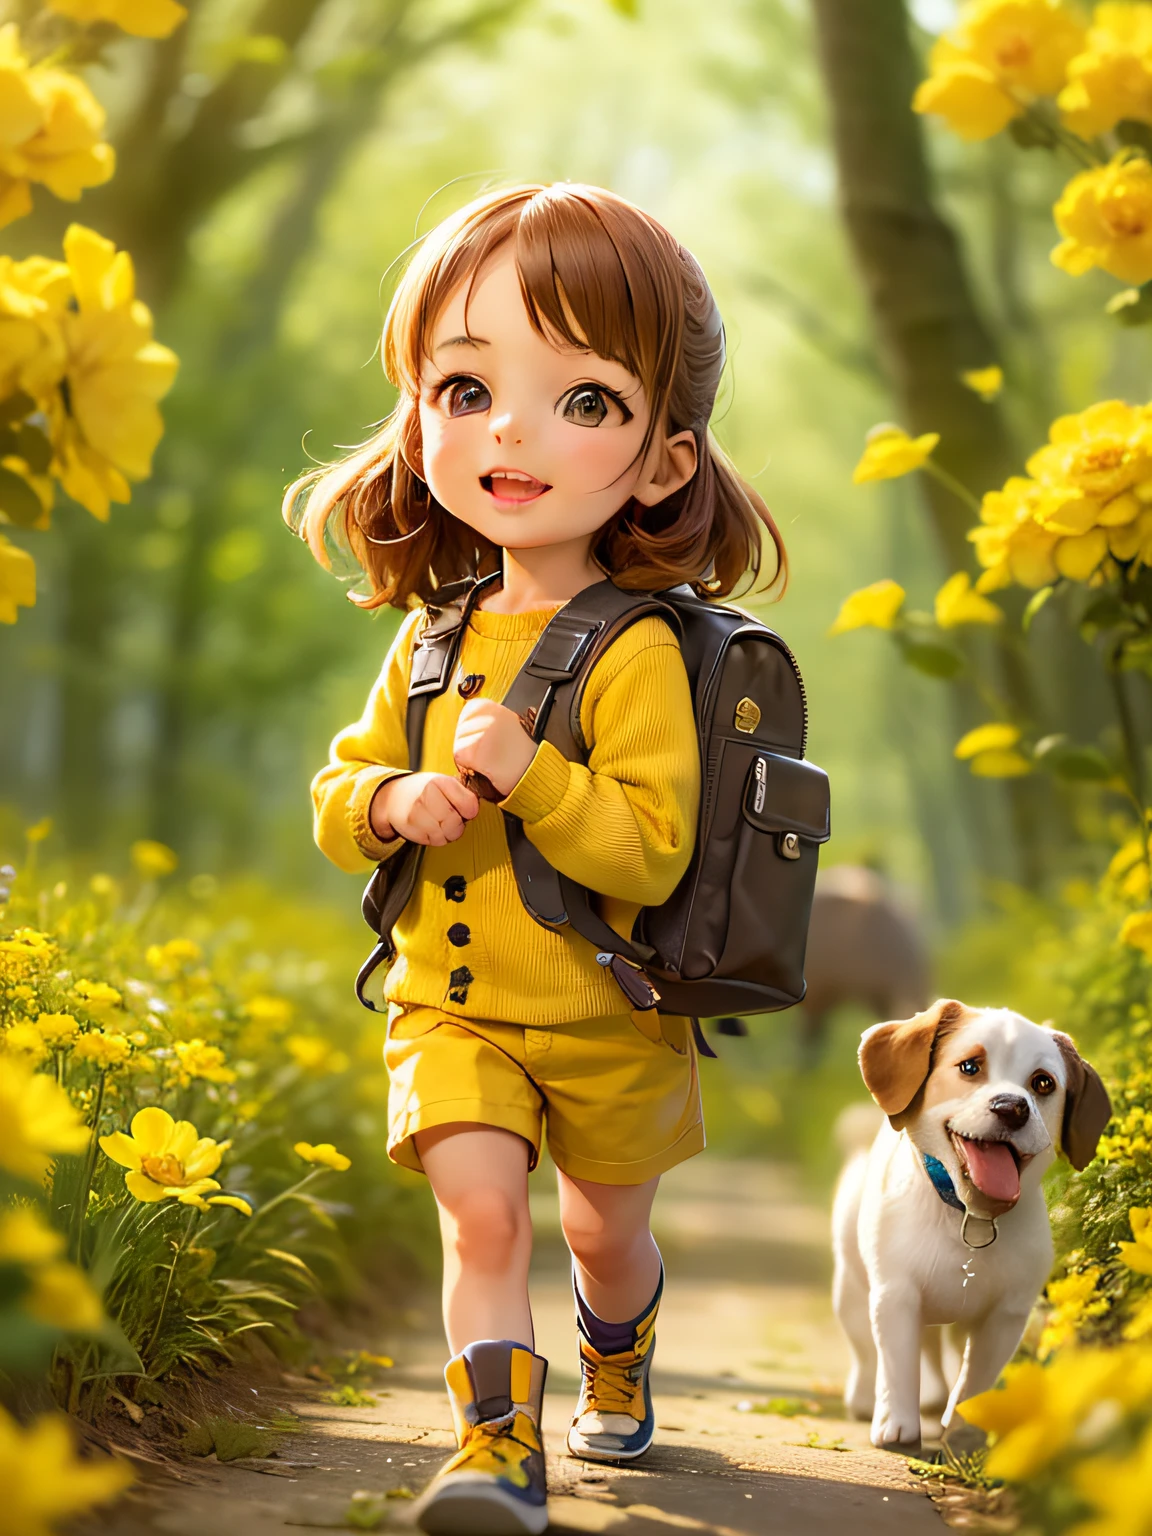 Eine ganz bezaubernde Frau mit Rucksack und ihrem süßen Welpen genießt einen schönen Frühlingsspaziergang umgeben von wunderschönen gelben Blumen und der Natur. Die Illustration ist eine hochauflösende Illustration in 4K-Auflösung mit sehr detaillierten Gesichtszügen und Bildern im Cartoon-Stil.